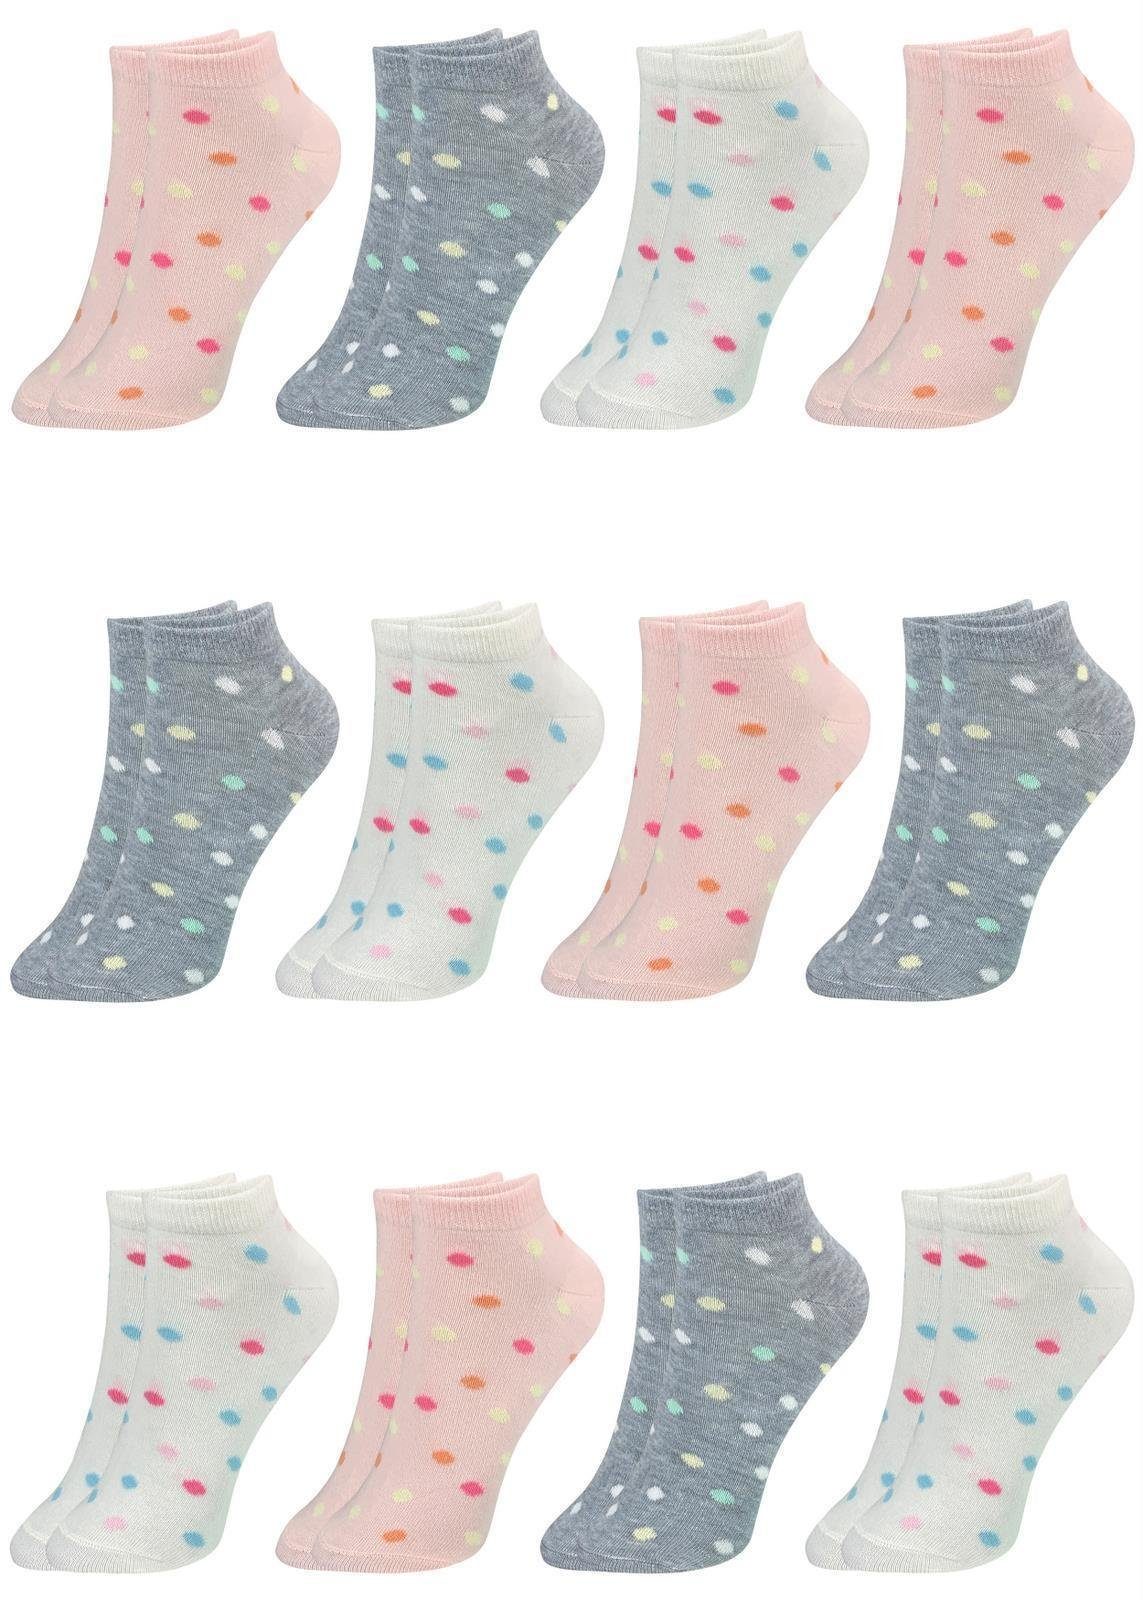 LOREZA Kurzsocken 12 Paar Mädchen Socken Sneakersocken Kindersocken (Paar, 12-Paar) 12-Paar Modell 5 | Kurzsocken